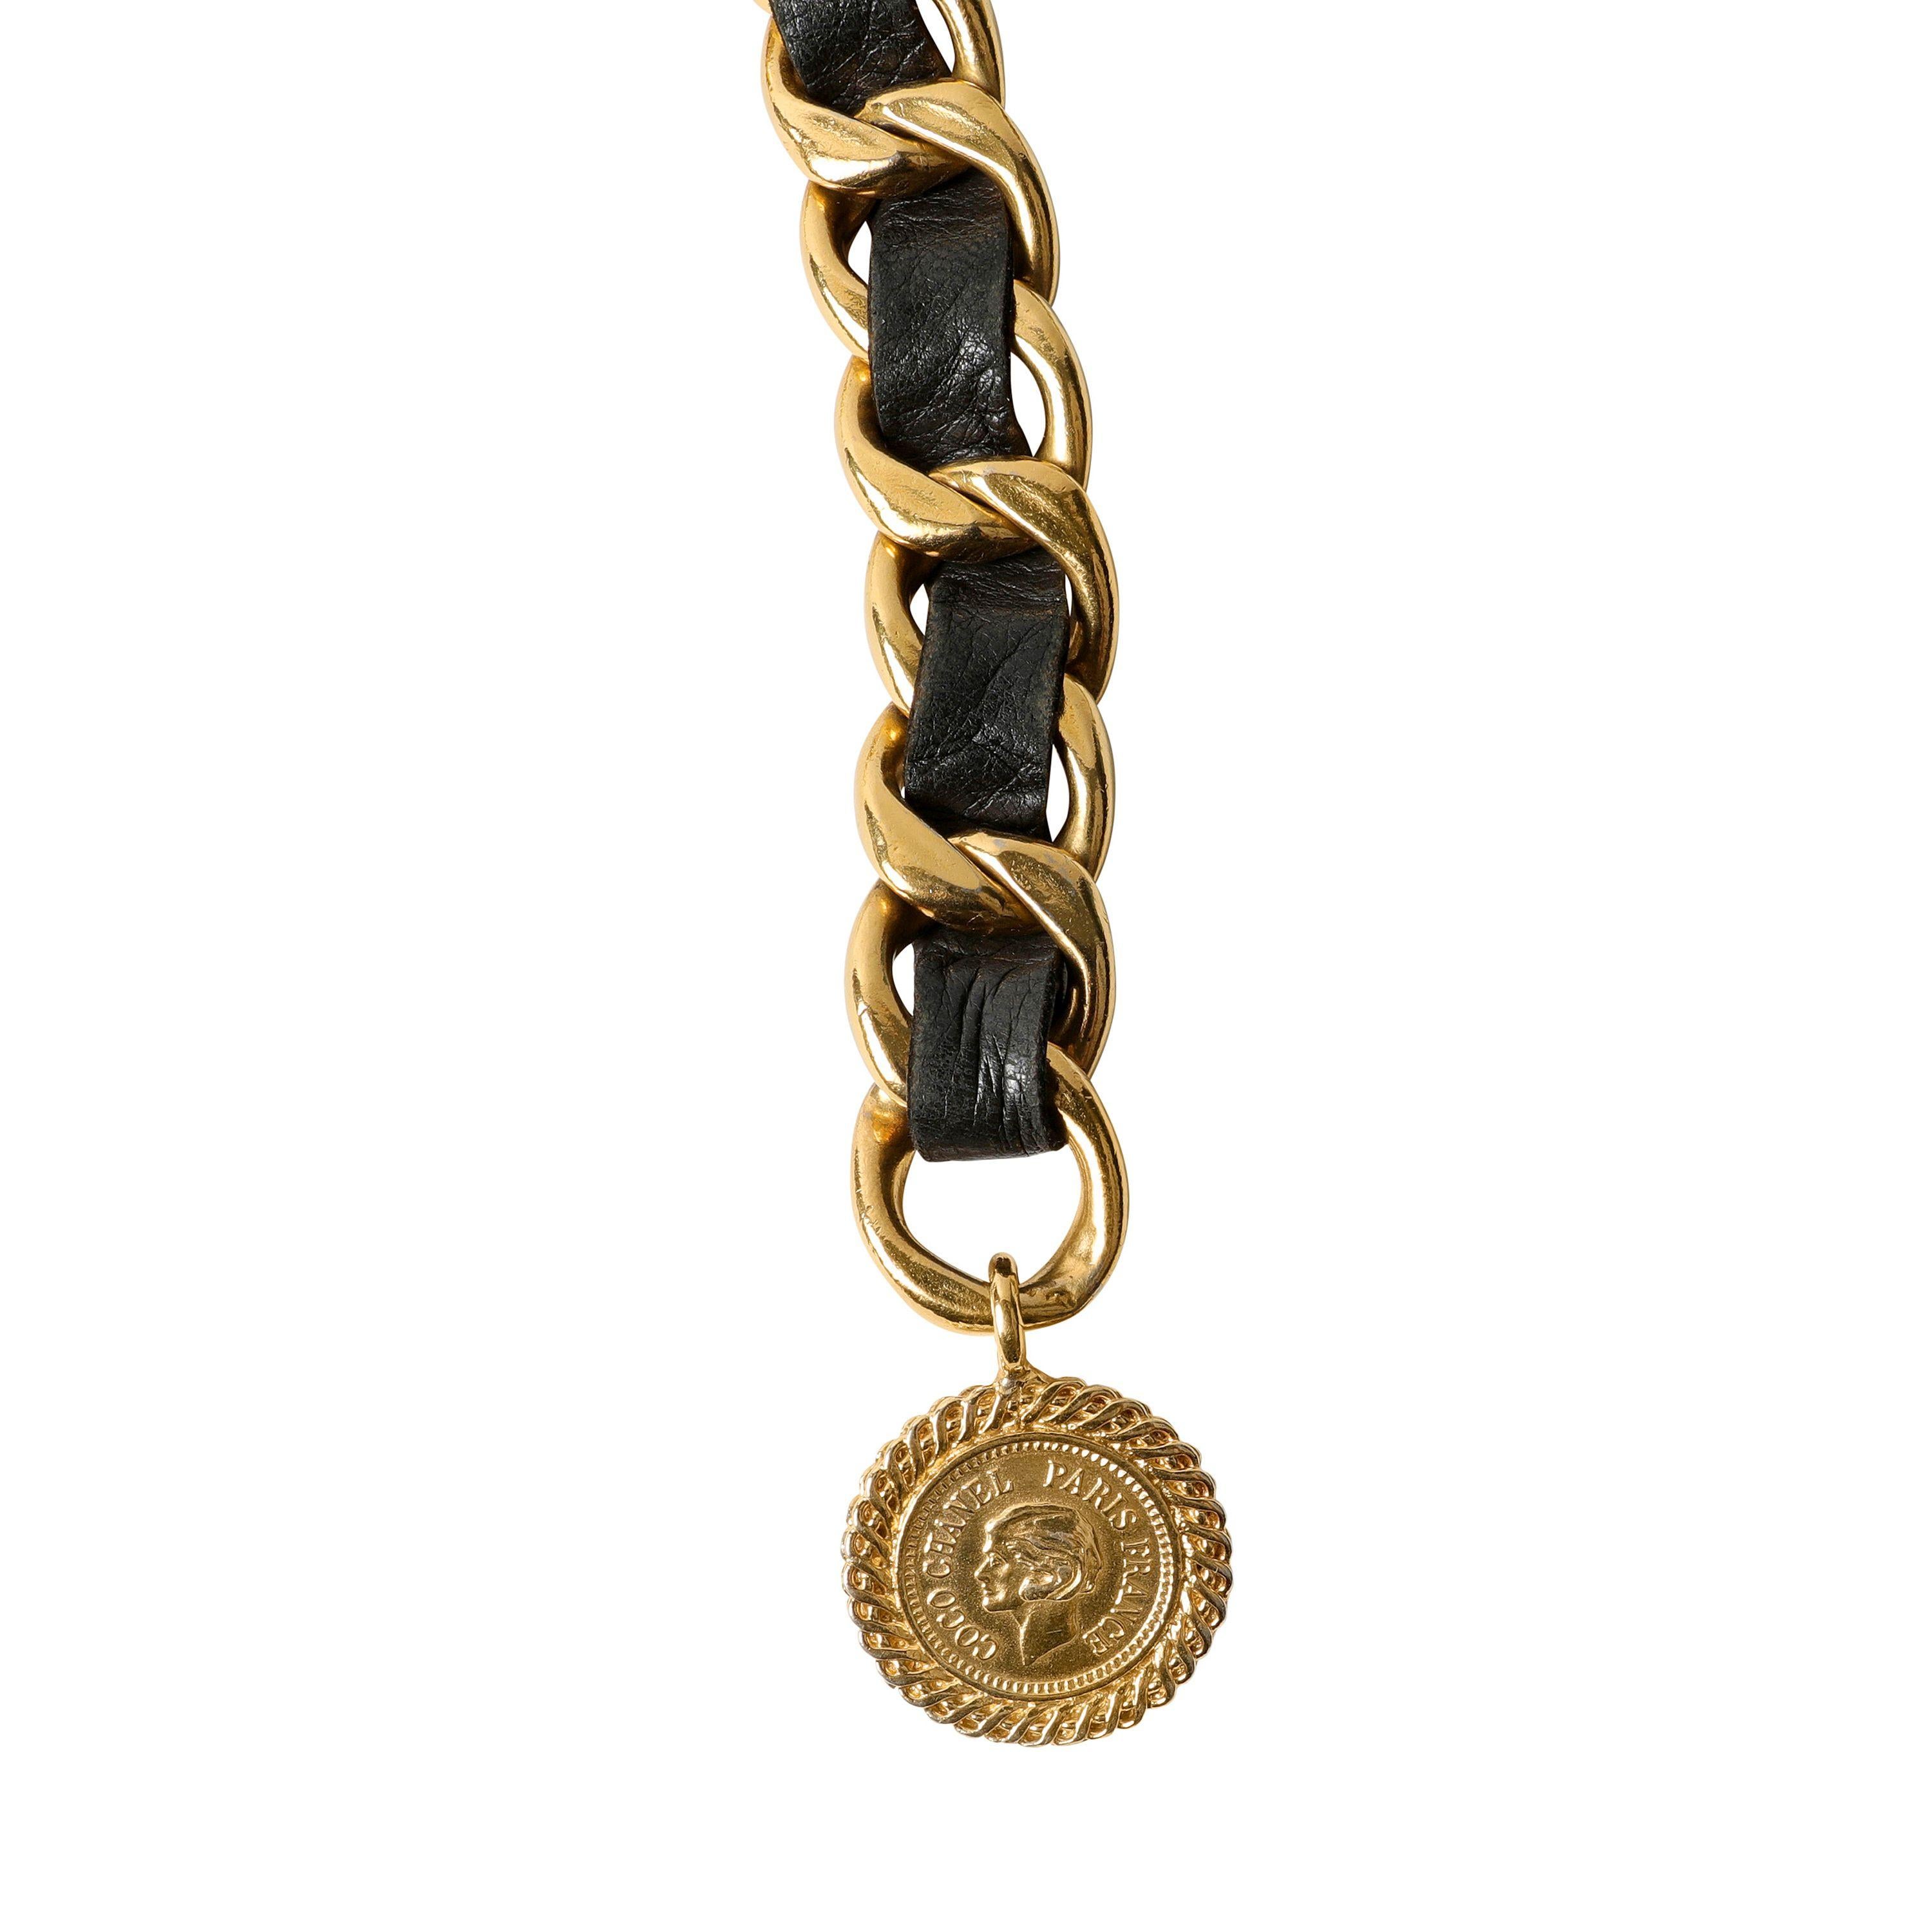 Diese authentische Chanel Schwarzes Leder und Goldkette Gürtel ist in ausgezeichnetem Vintage-Zustand.  Ein echter Klassiker: Diese drapierte Kette ist vielseitig und immer schick. 
Schwarzes Leder ist mit einer goldenen Gliederkette verflochten. 